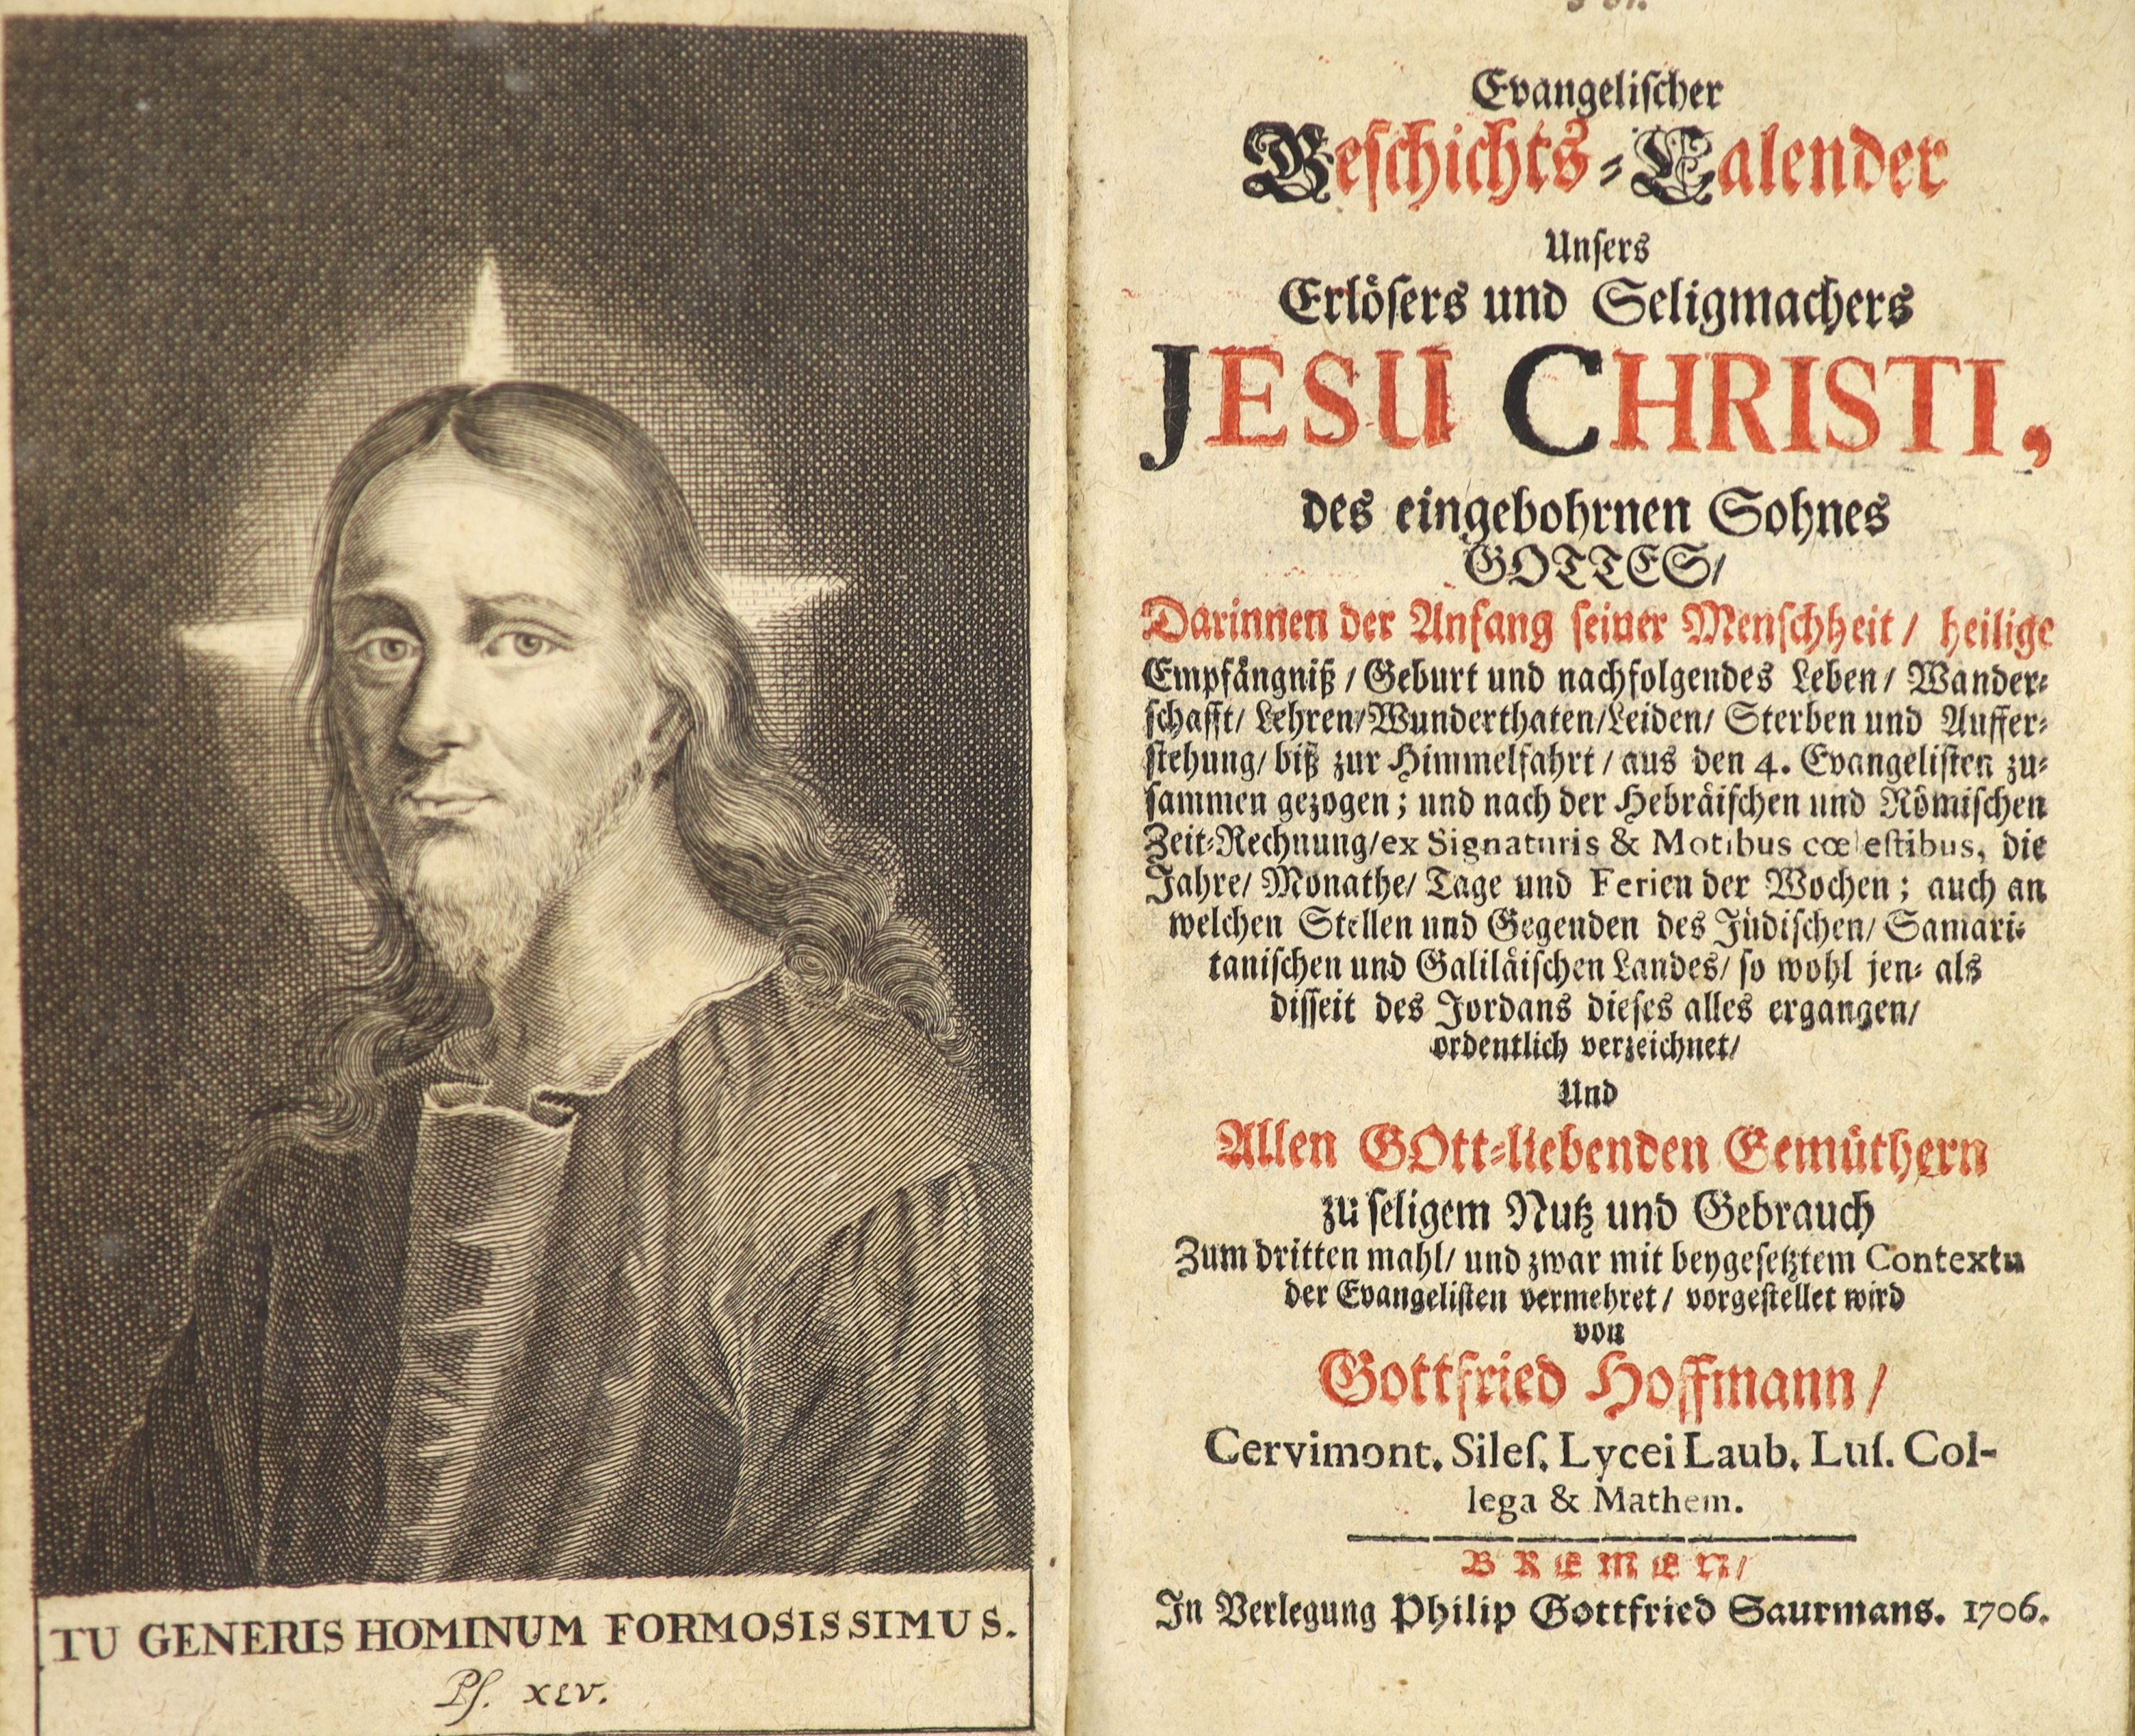 Hoffman, Gottfried. Evangelischer Geschichts - Calender unfers Erlosers und Seligmachers Jesu Christi ...